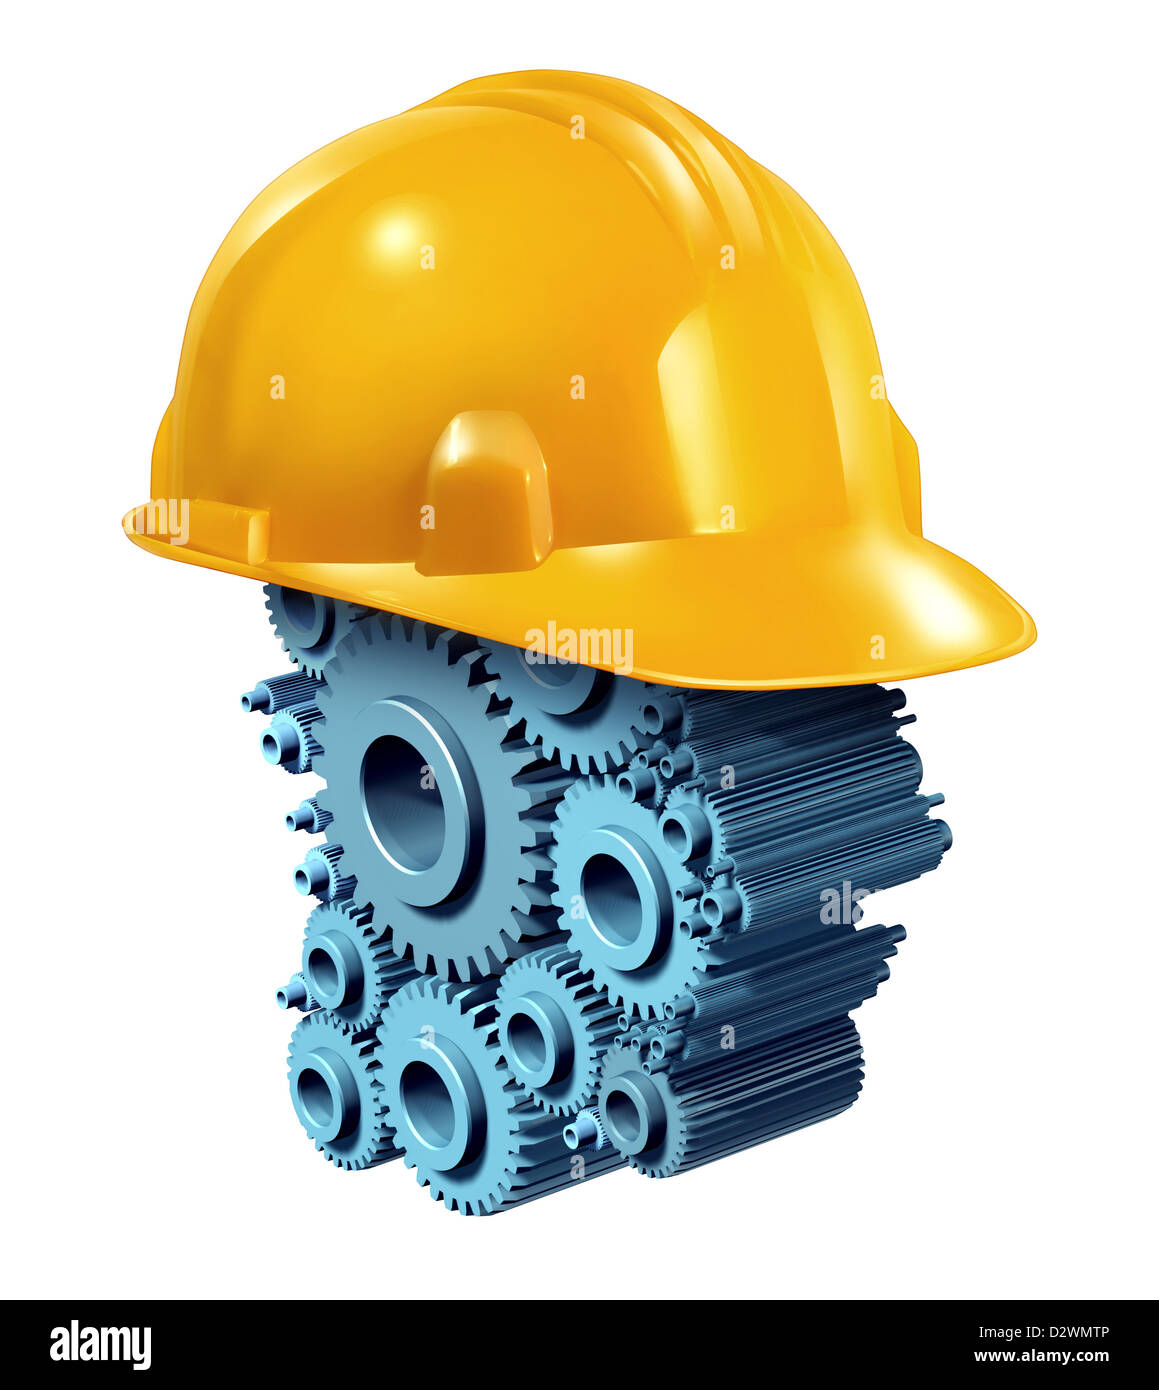 Bau Industrie Arbeitskonzept mit einem gelben Schutzhelm über einen menschlichen Kopfform aus Getriebe und Zahnräder als ein Gebäude Geschäft Symbol von Arbeitnehmern in Wohn-und Gewerbeimmobilien. Stockfoto